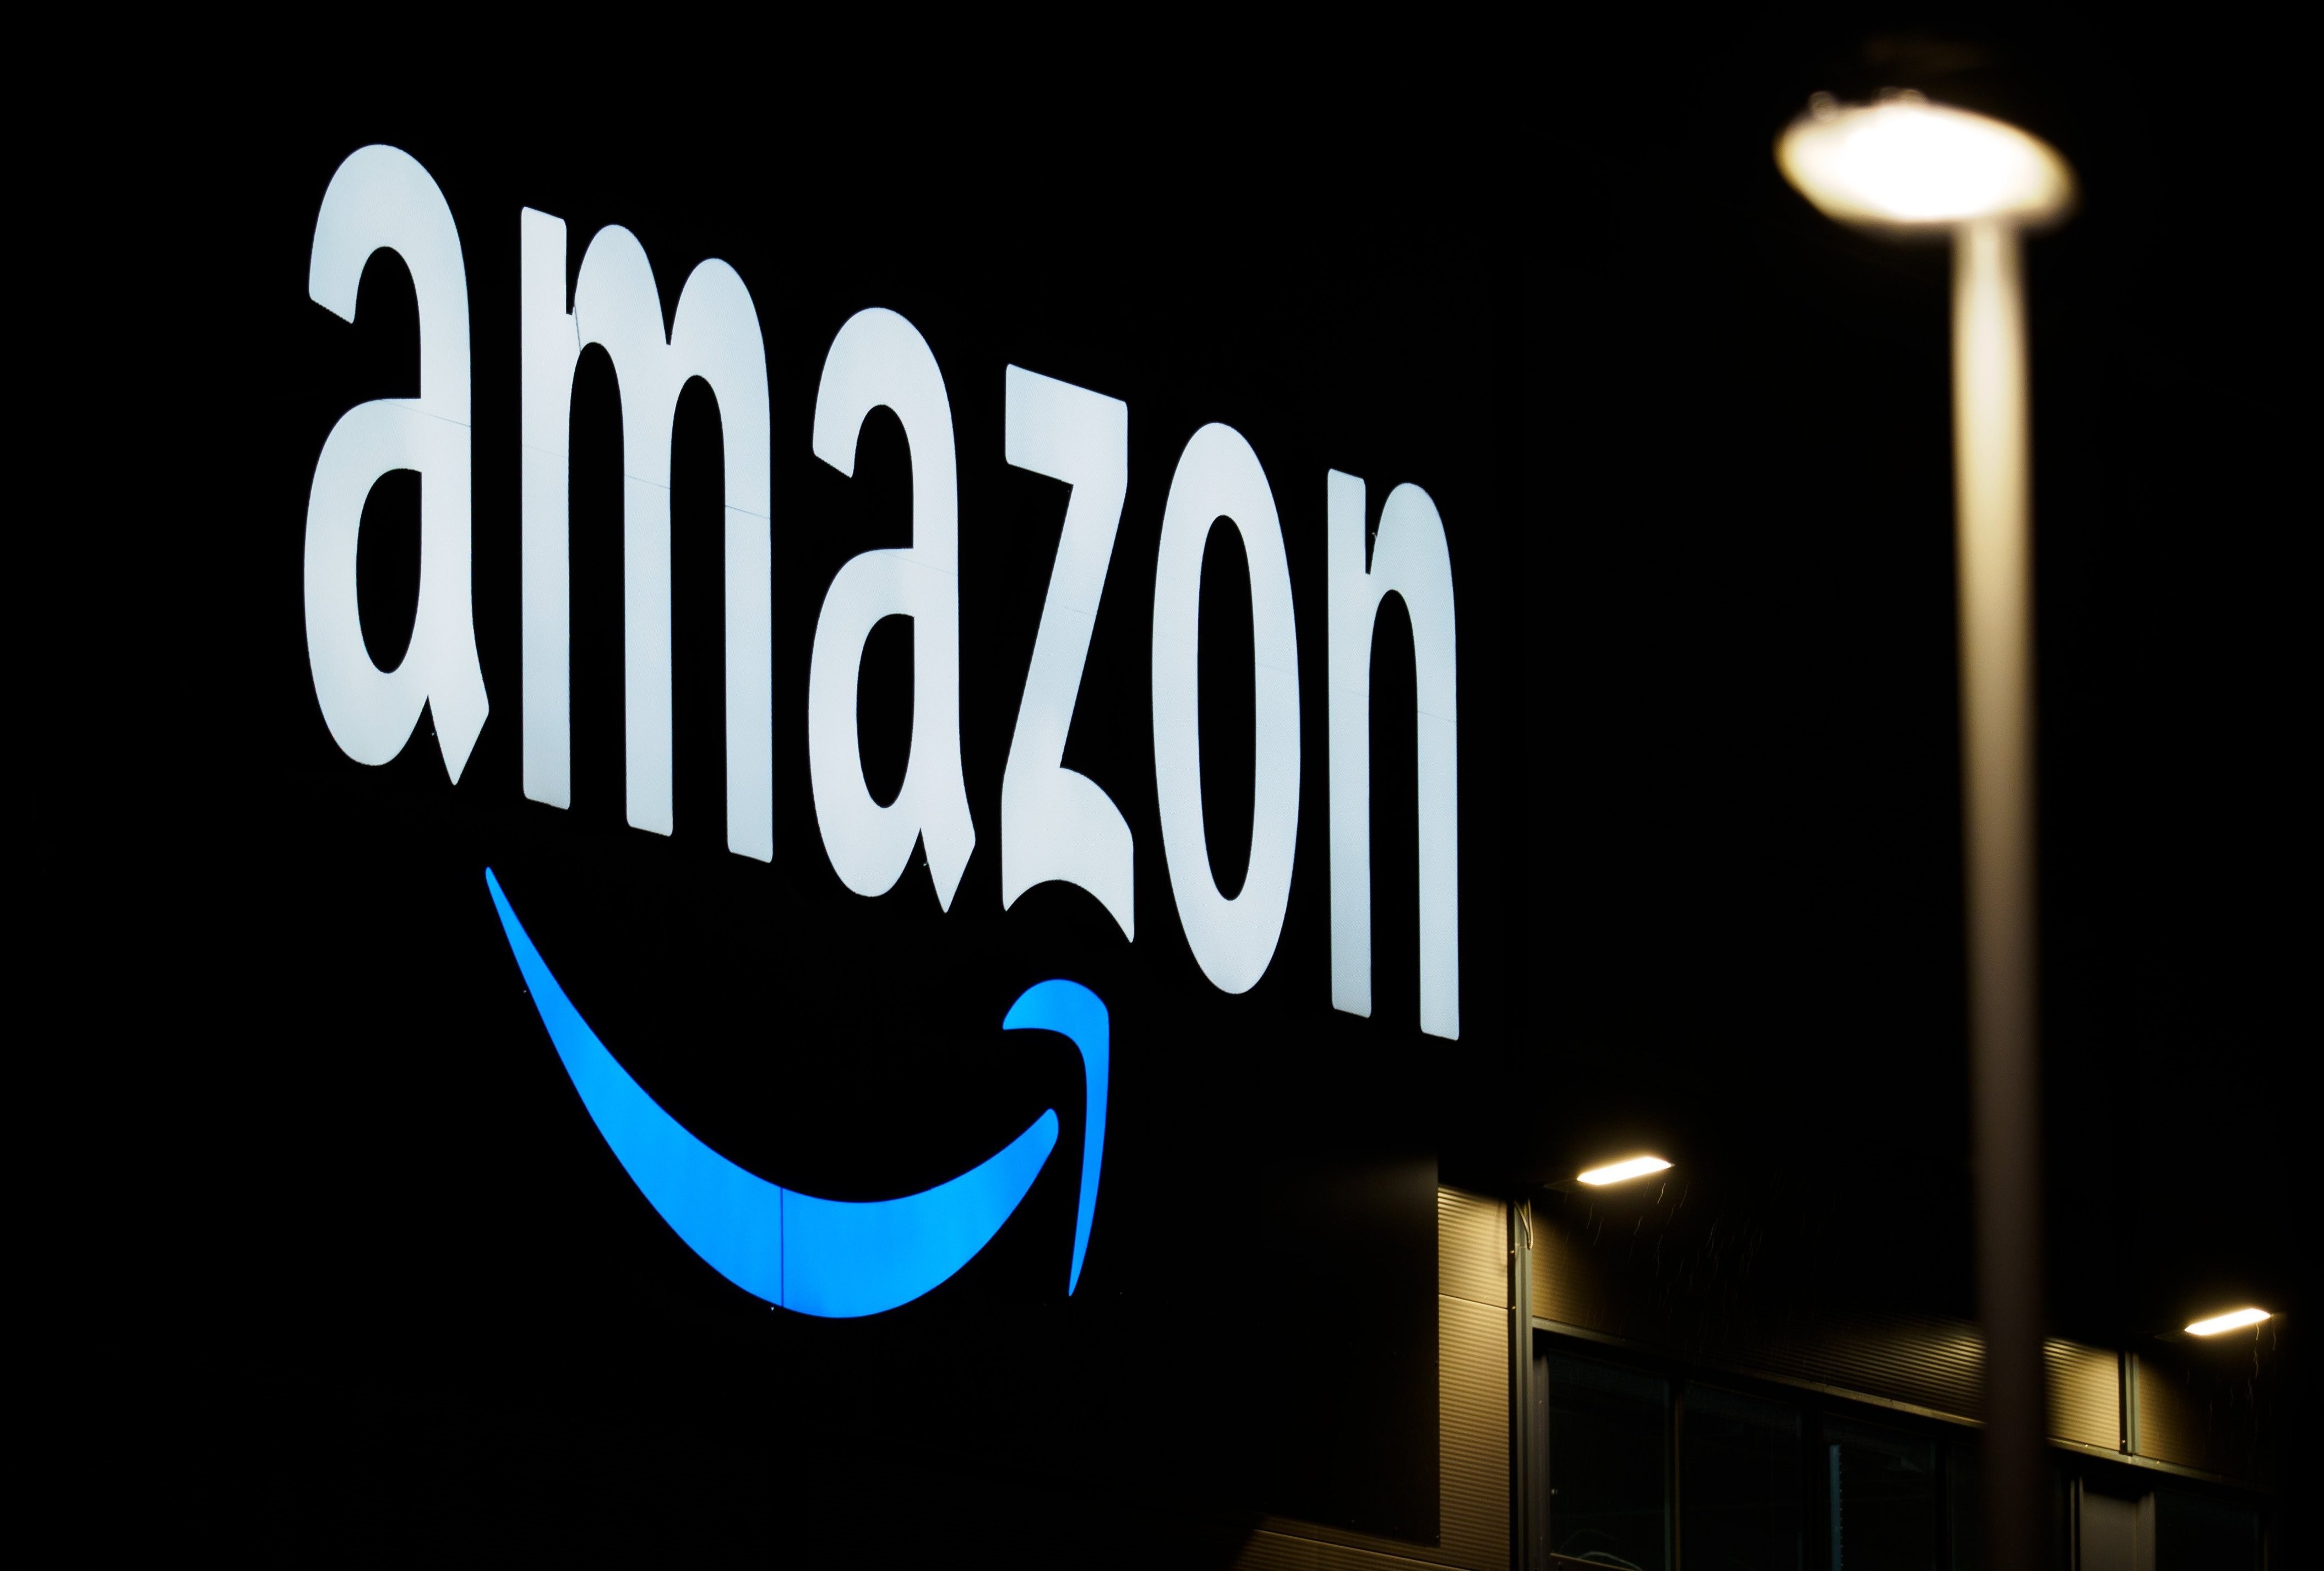 Top vendes black friday a Amazon: descobreix el que compren els nostres lectors